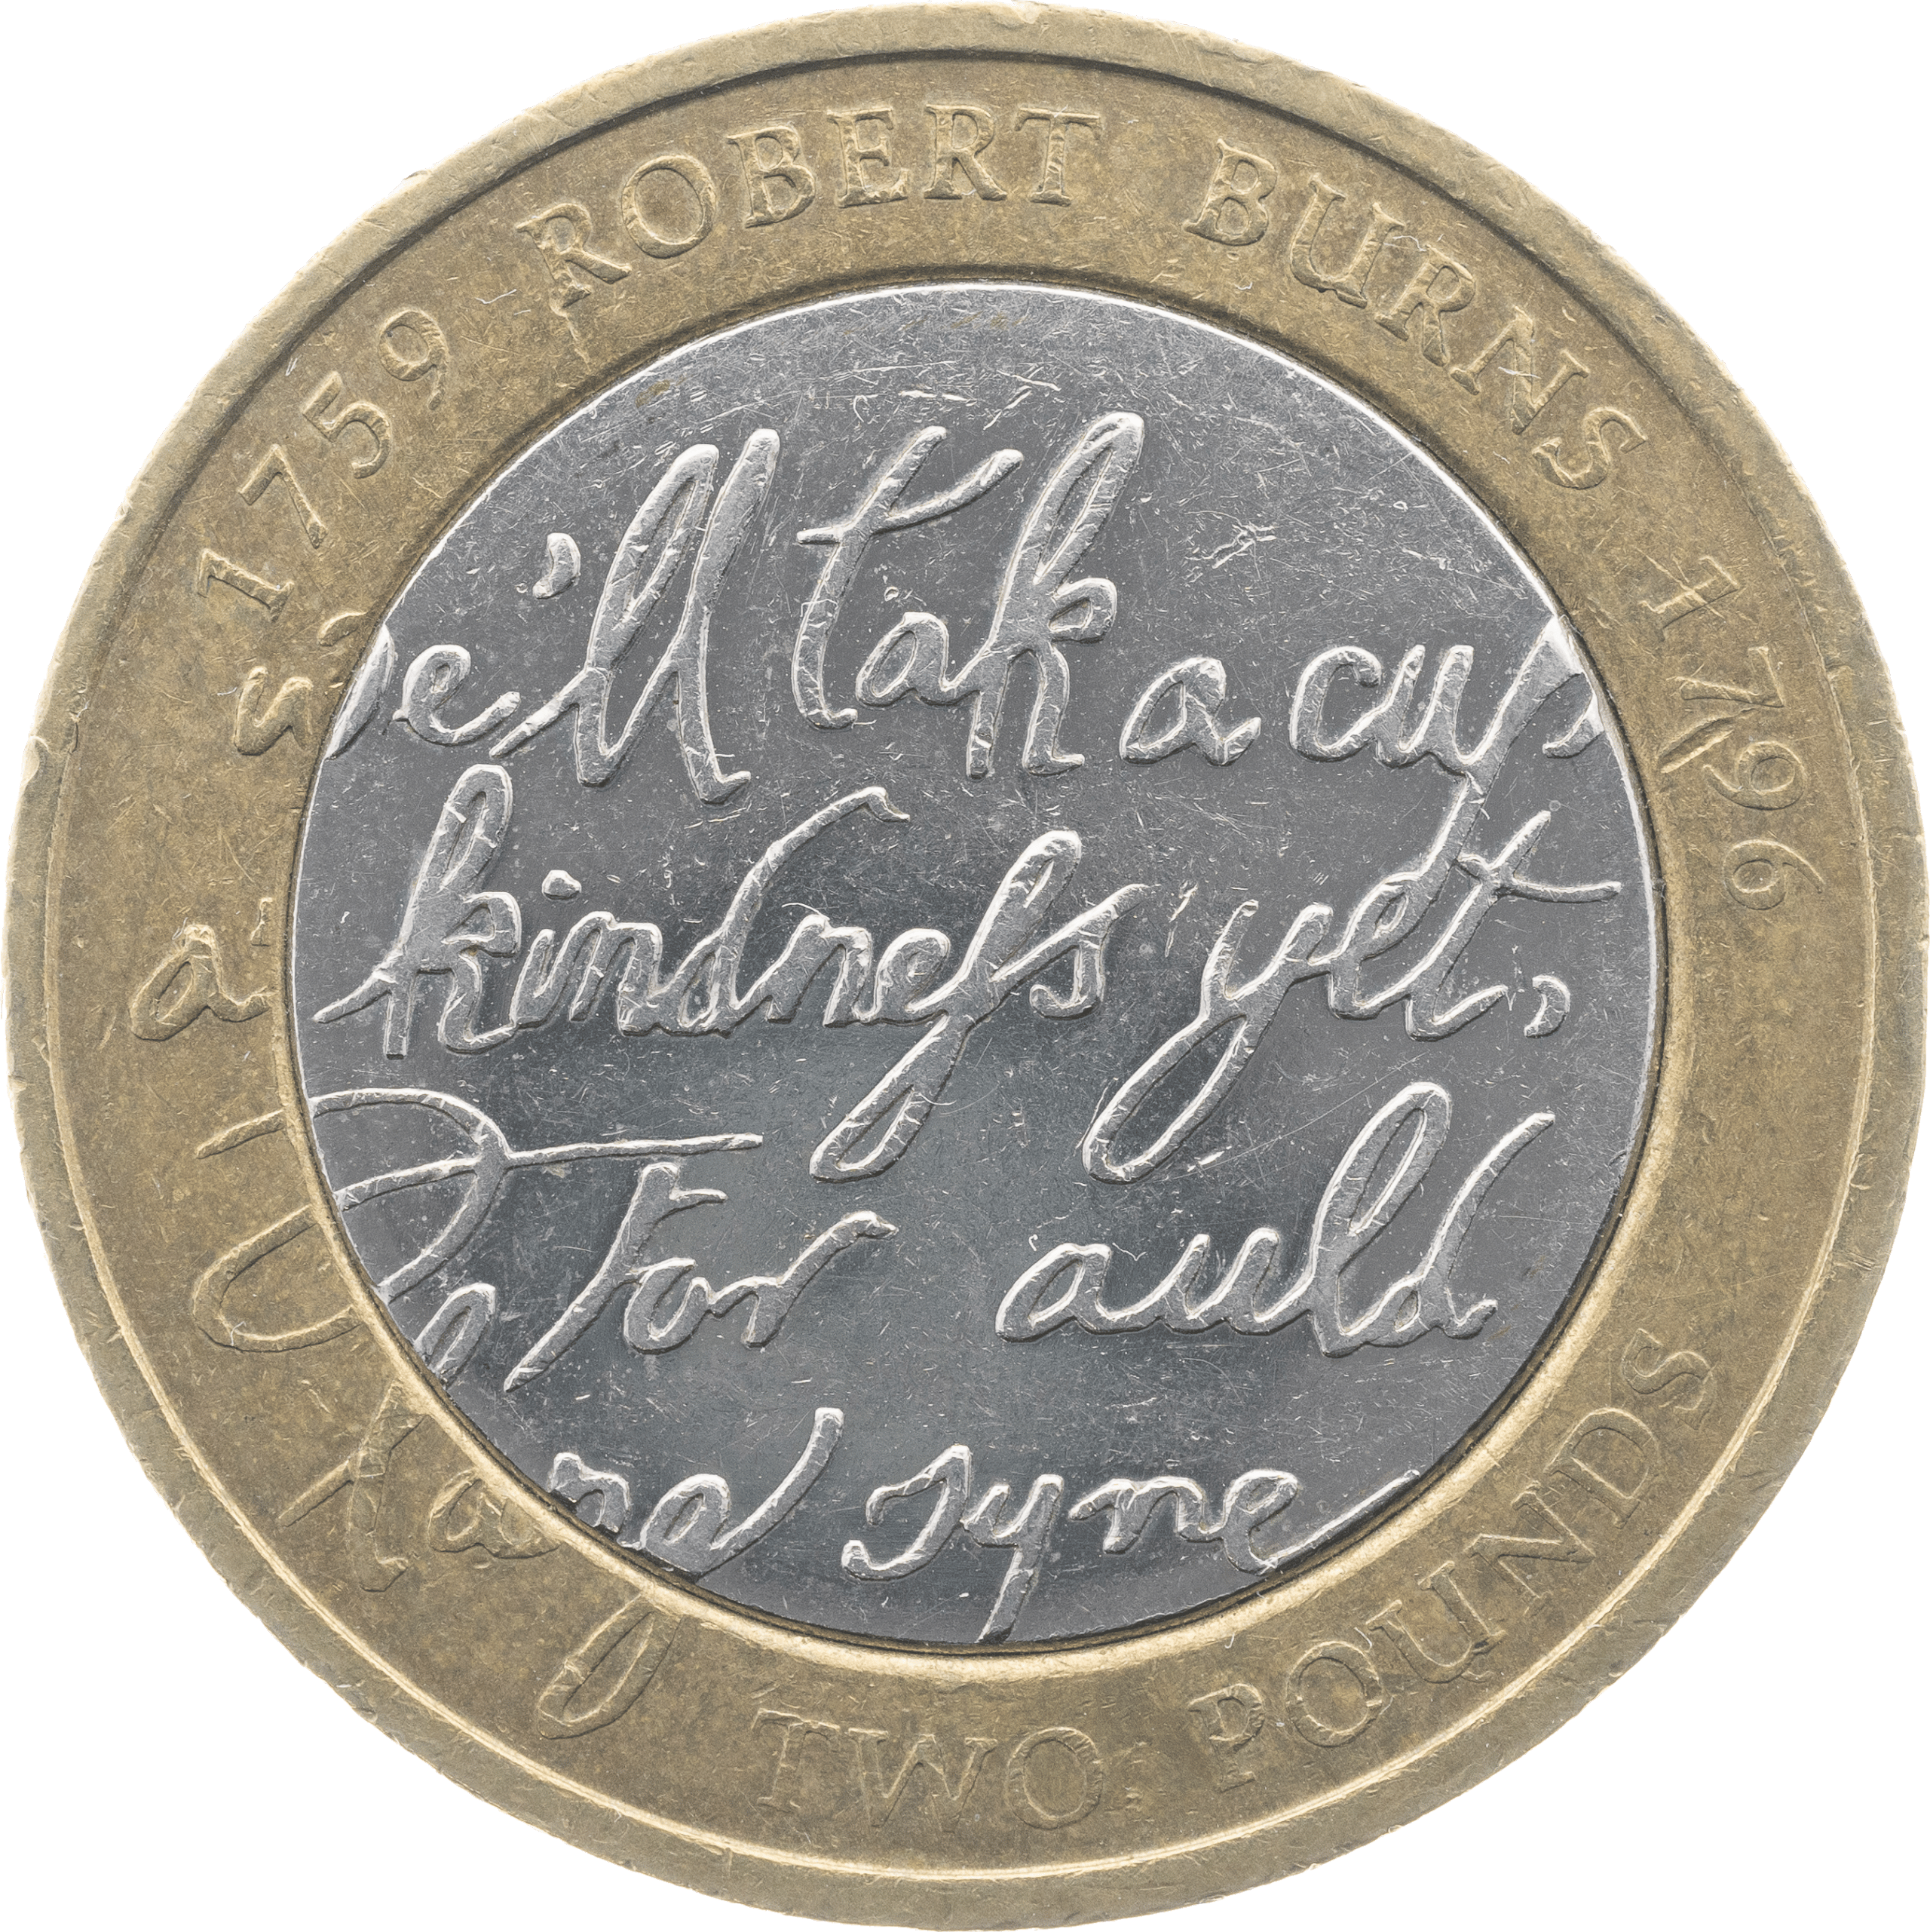 Robert Burns £2 Coin Design